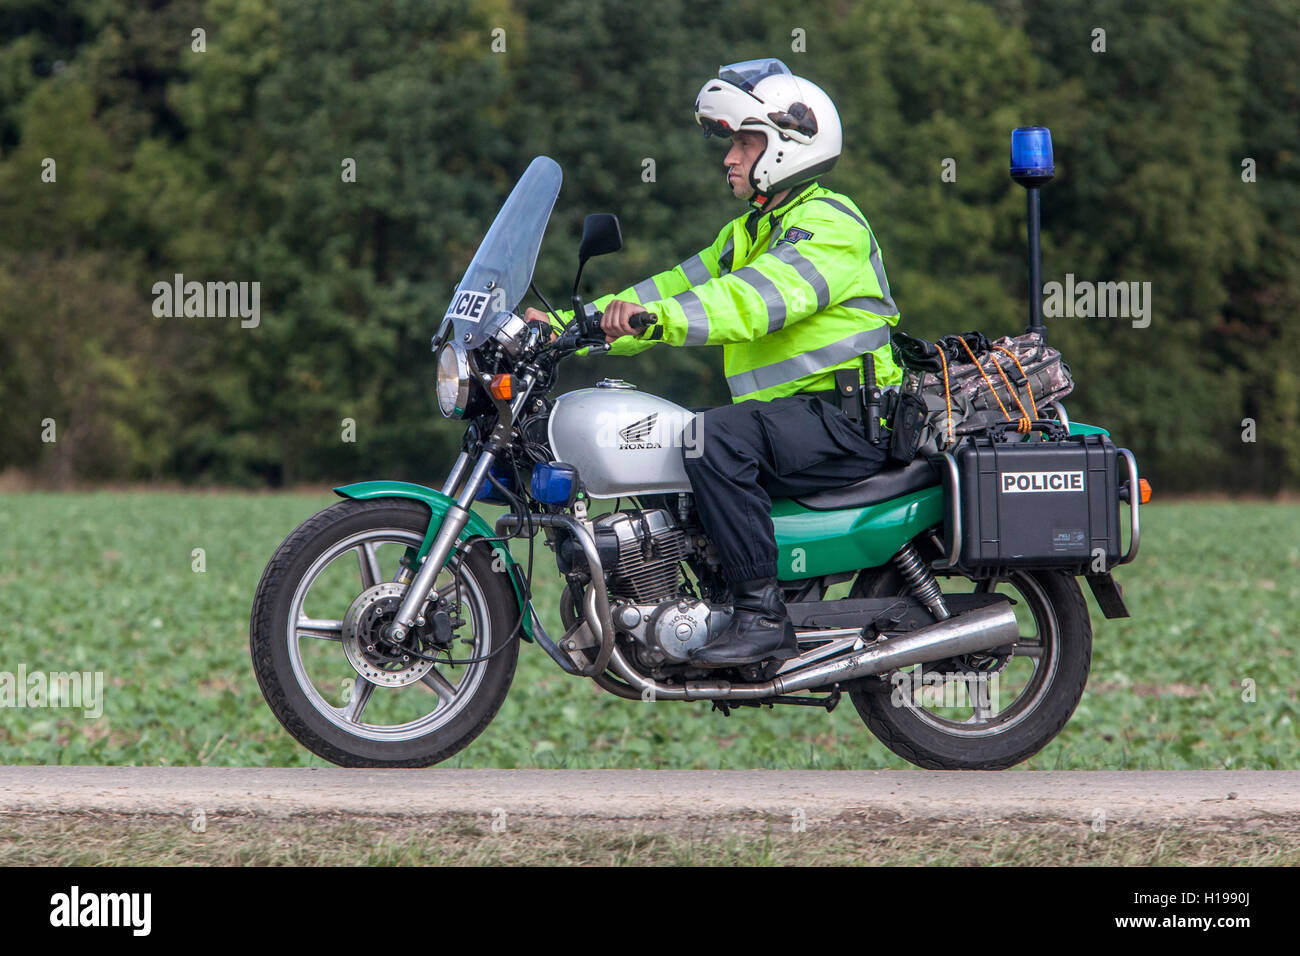 Police tchèque, policier sur moto, police moto Banque D'Images